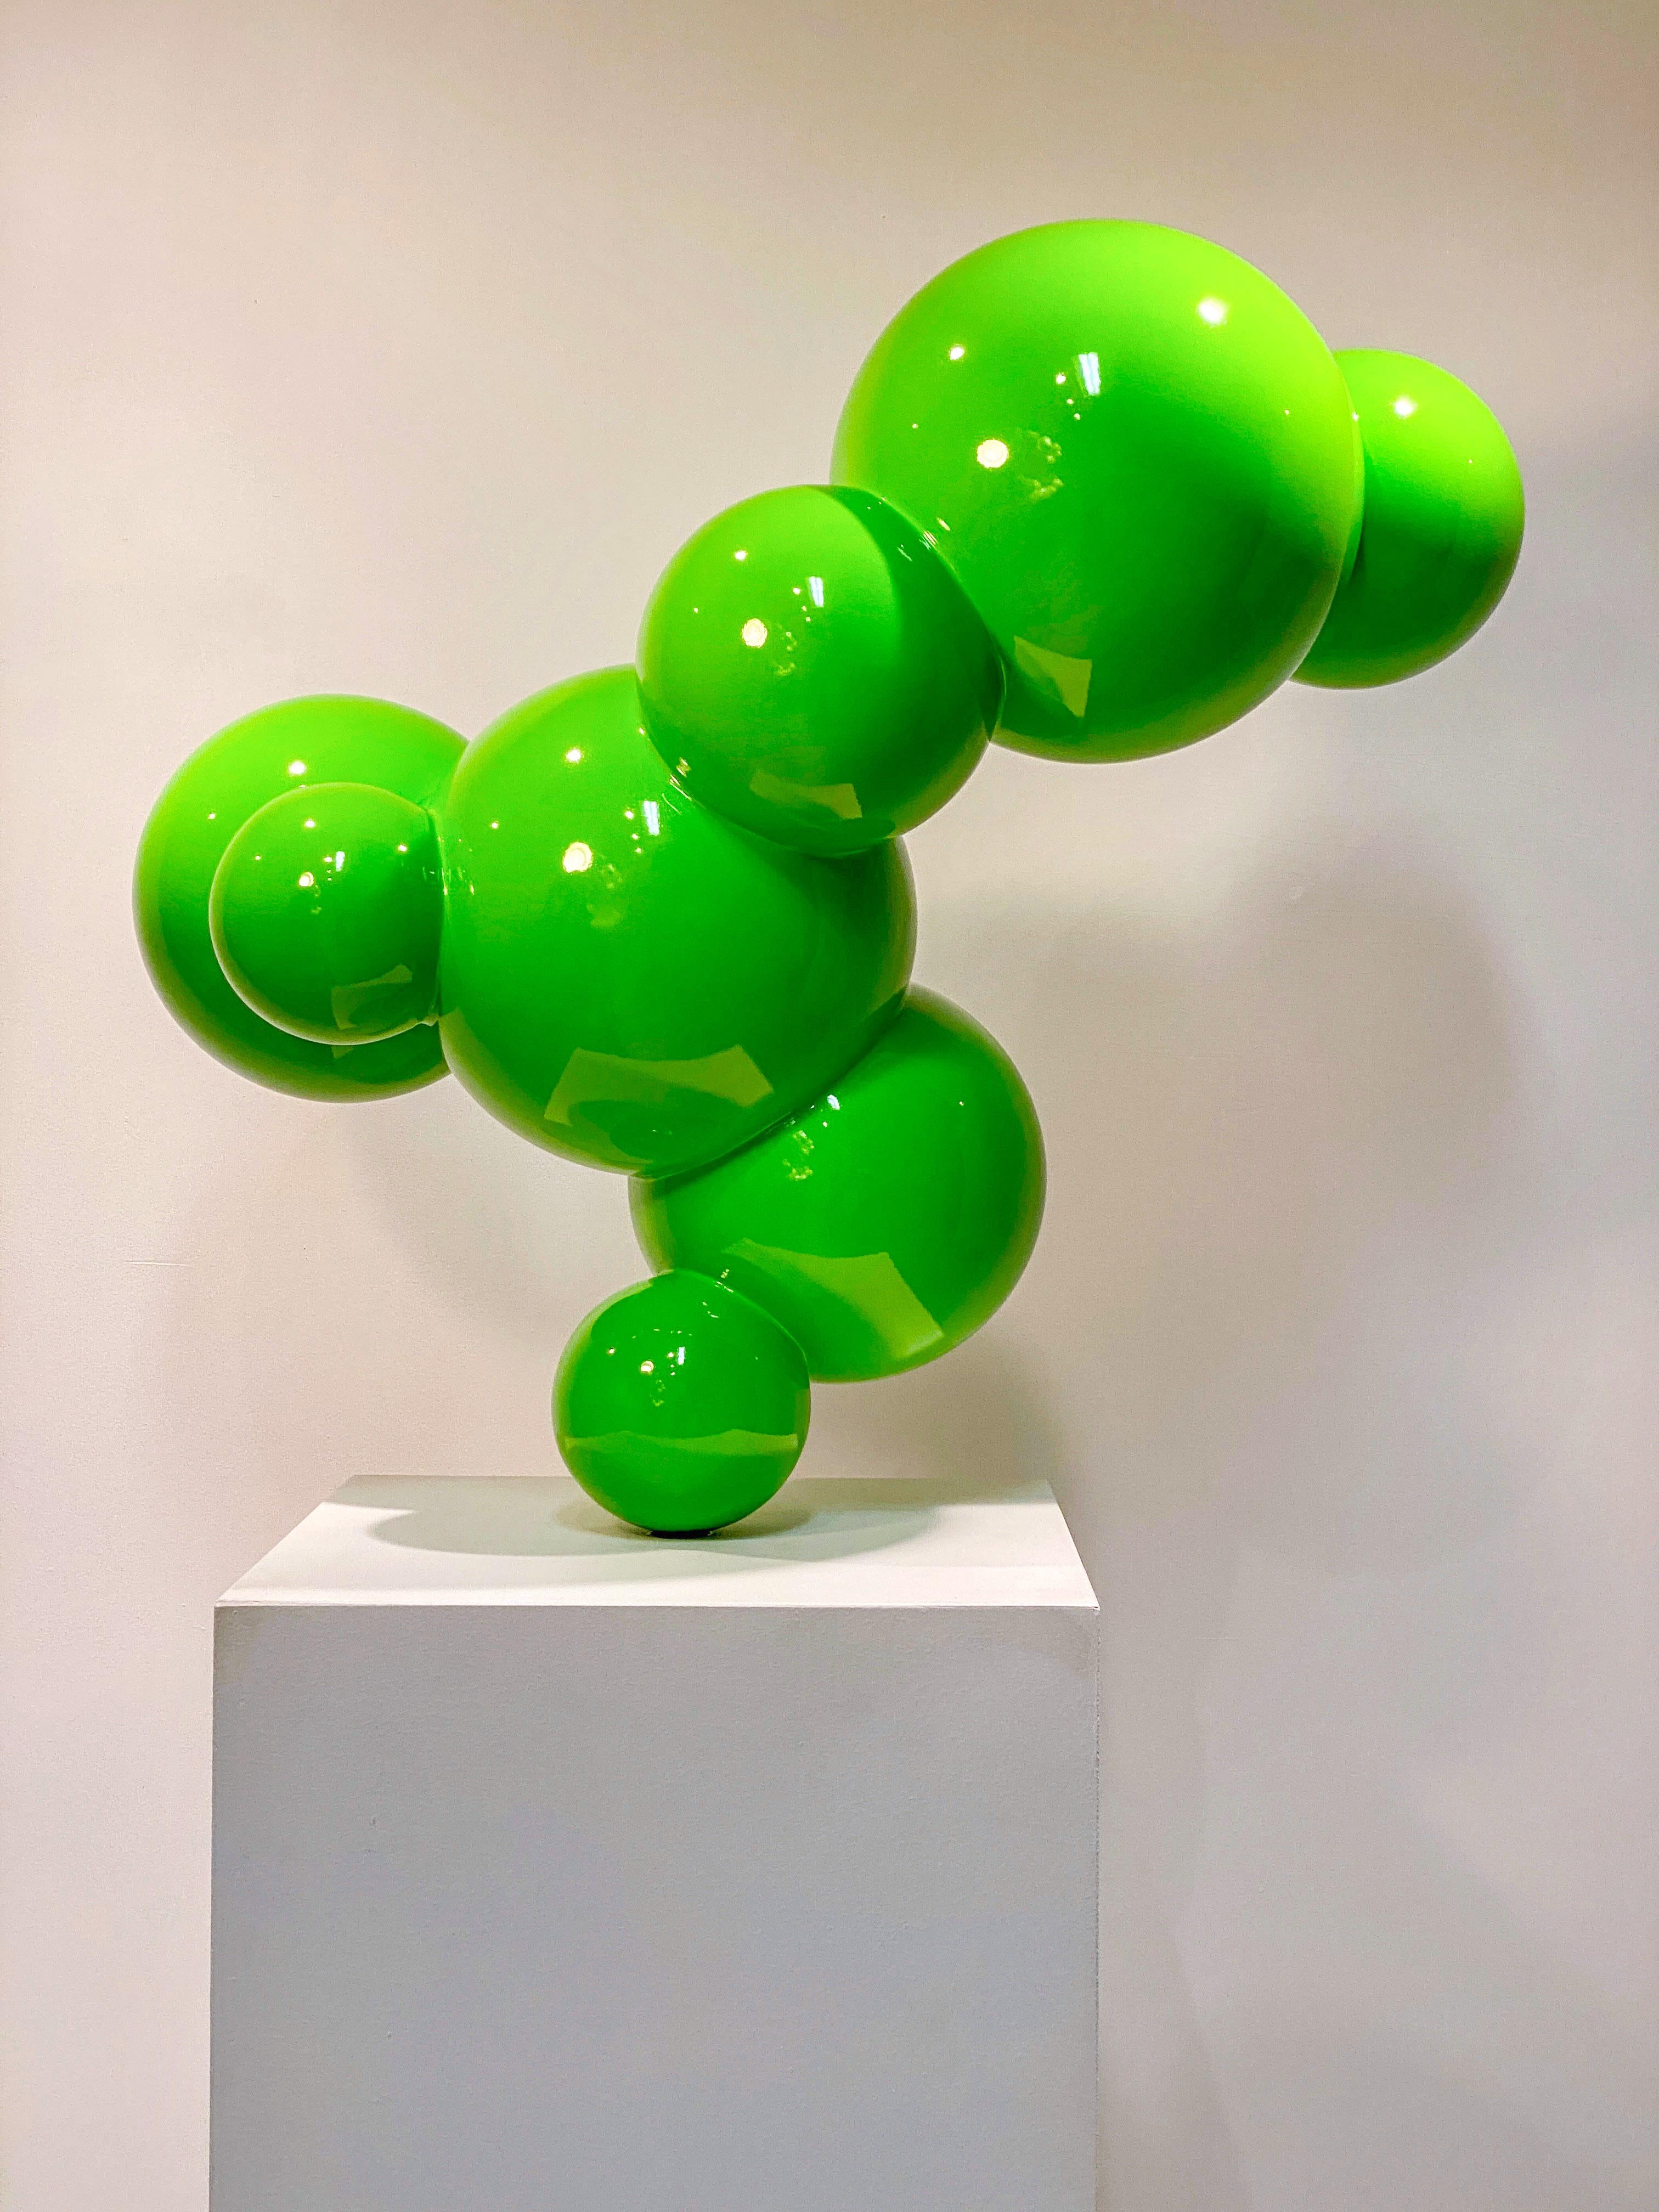 Algae 3 - vert, poli, sculpture géométrique abstraite en acier inoxydable peint